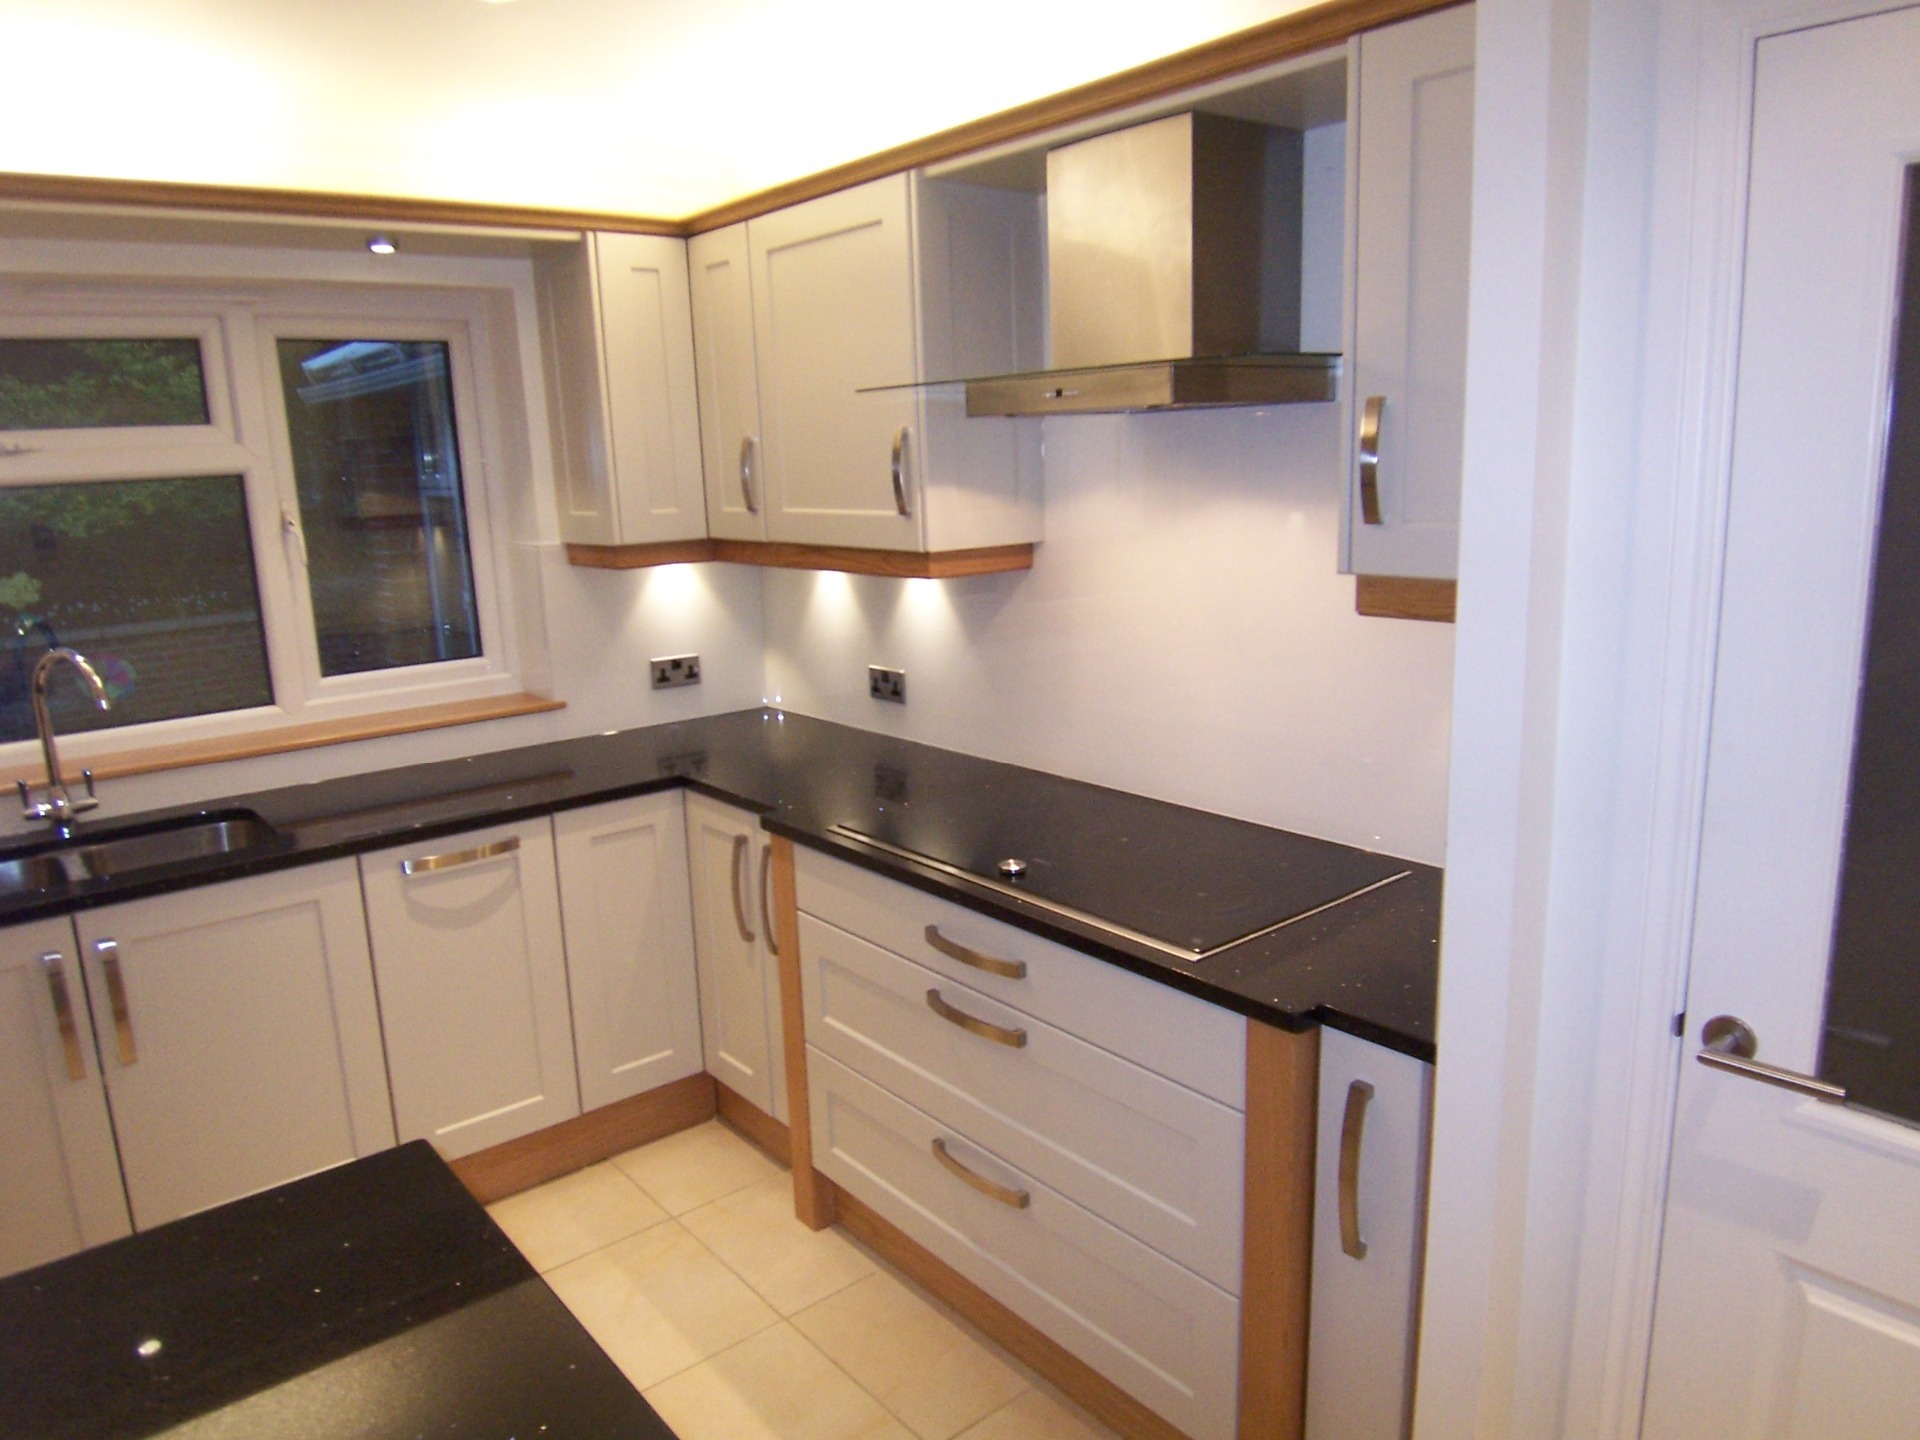 Built-in galley kitchen